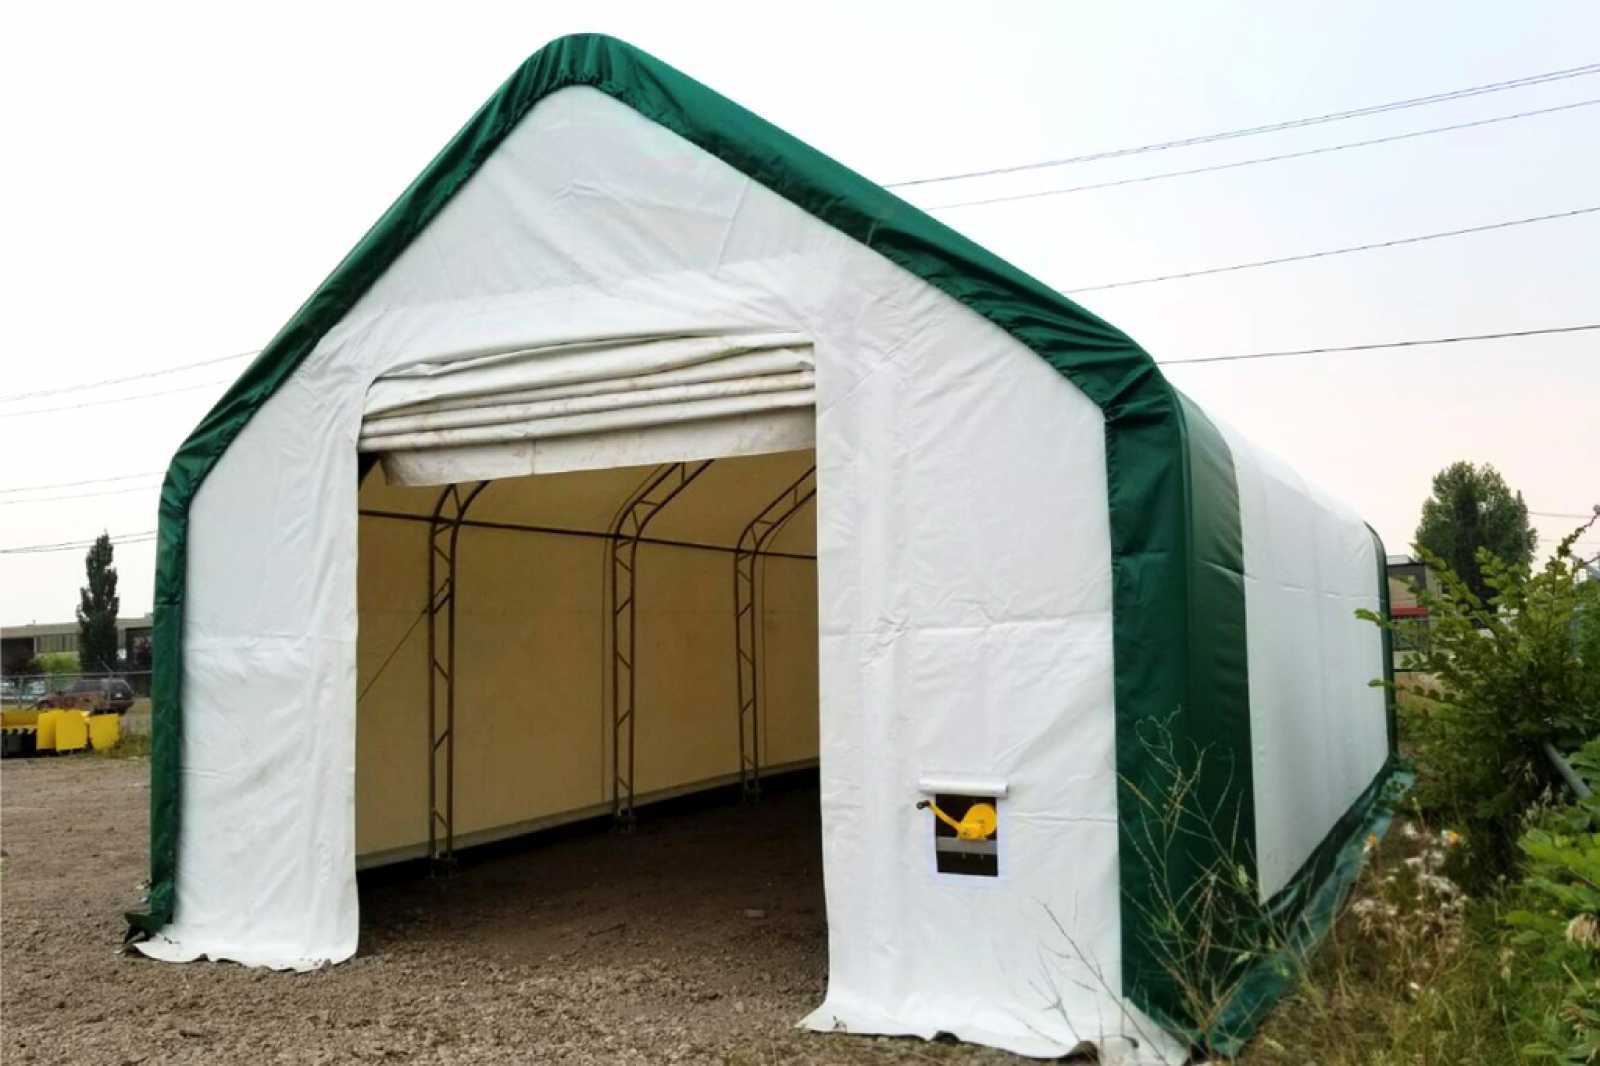 Hala namiotowa łukowa 10x15x5,2x3,2 magazyn konstrukcja ocynkowana.